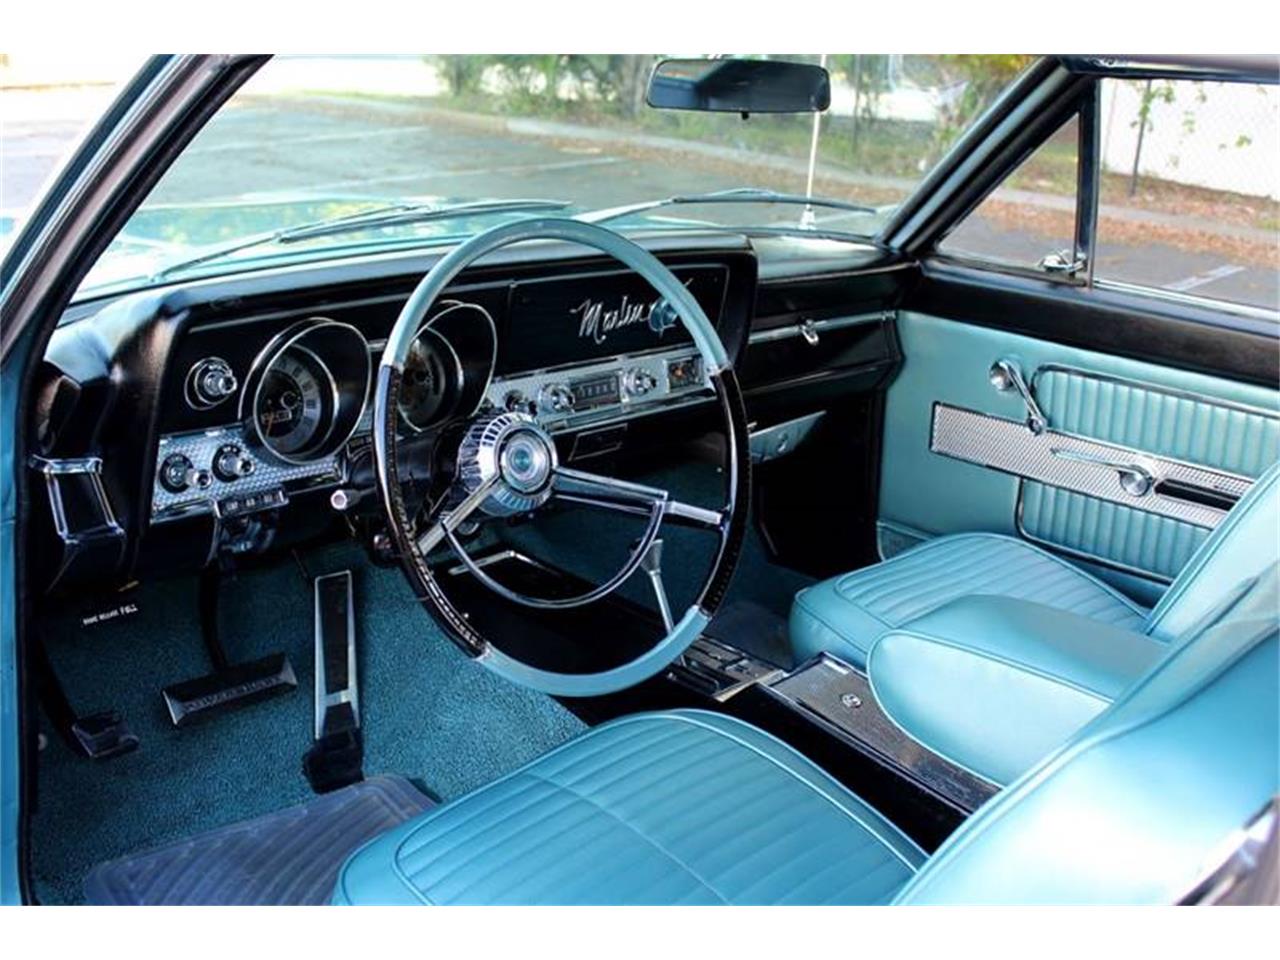 1965 rambler 4 doors sedan interior